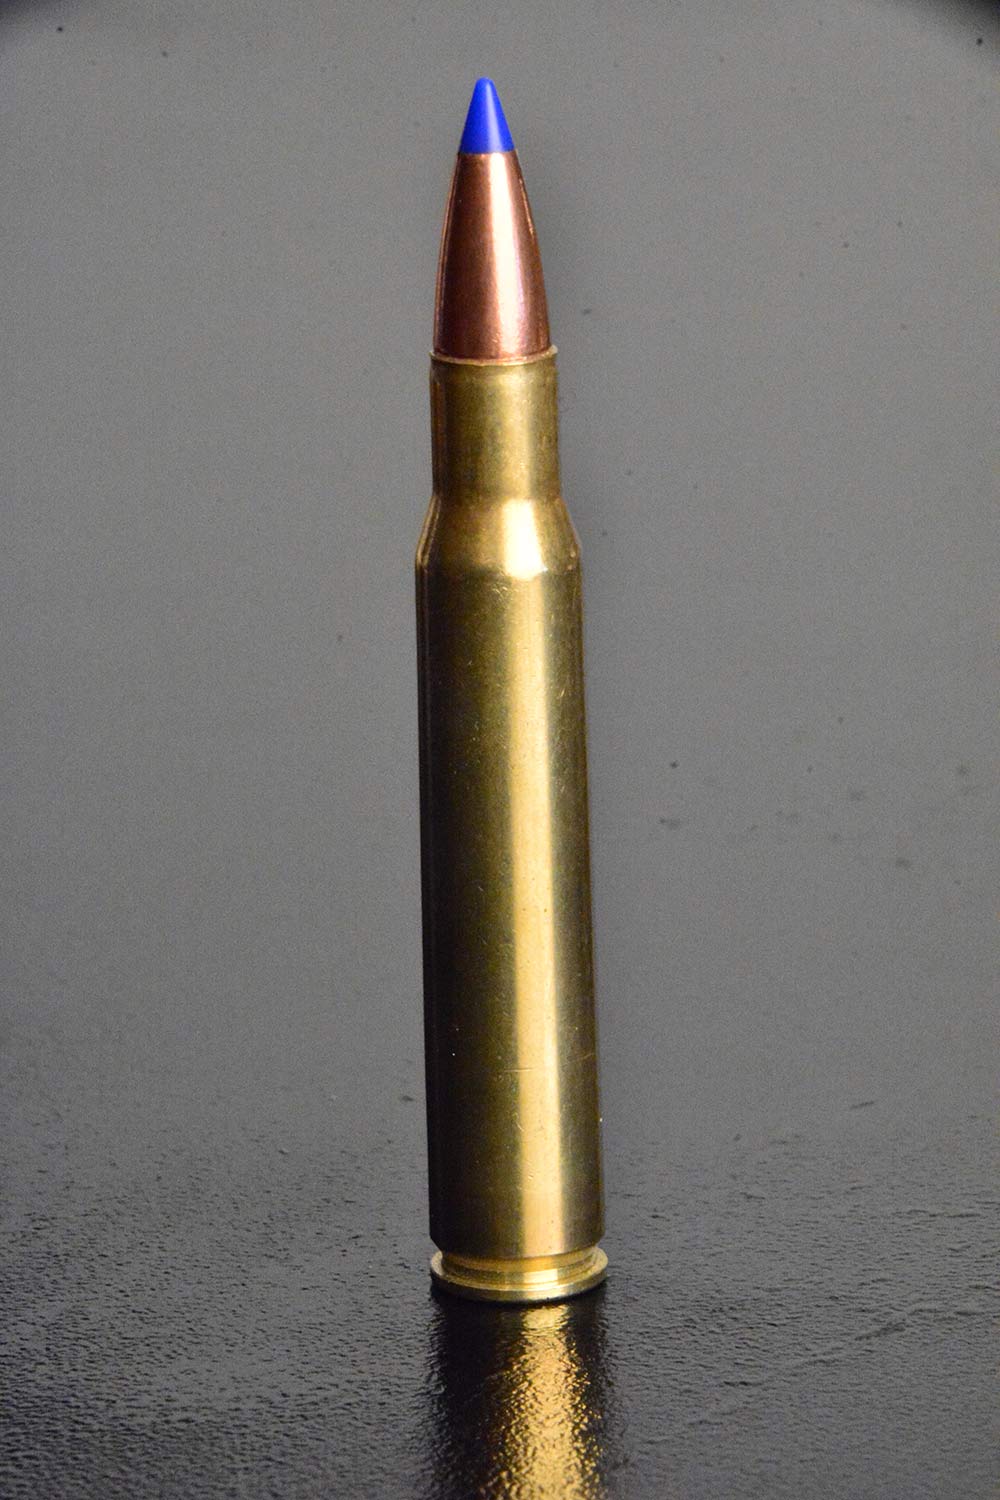 30-06 springfield whitetail rifle ammunition